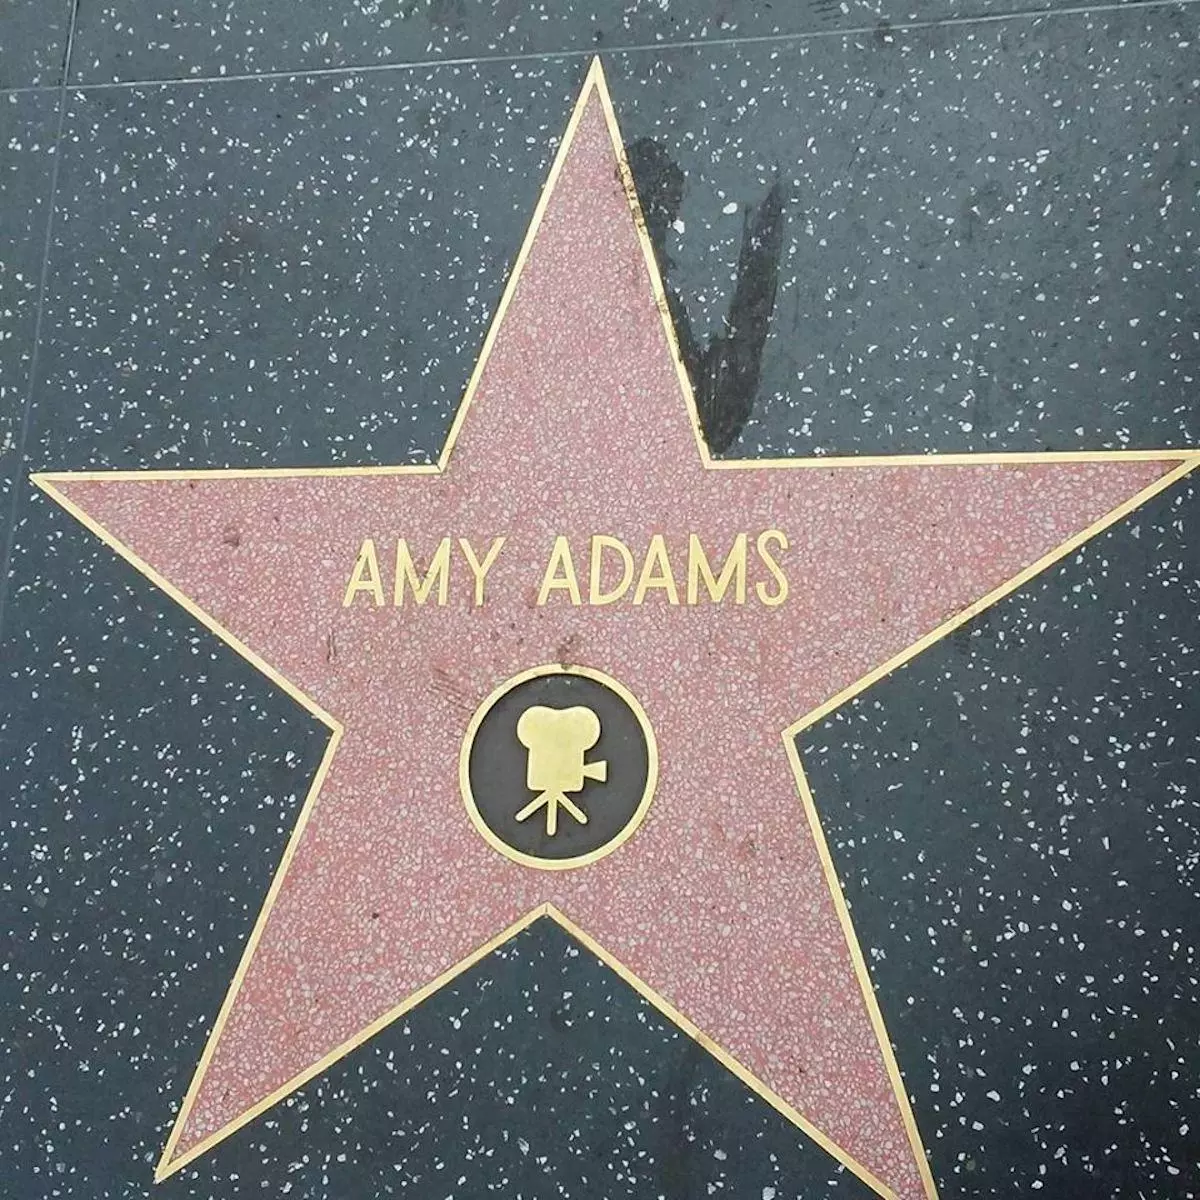 AmyAdams-Star.jpg